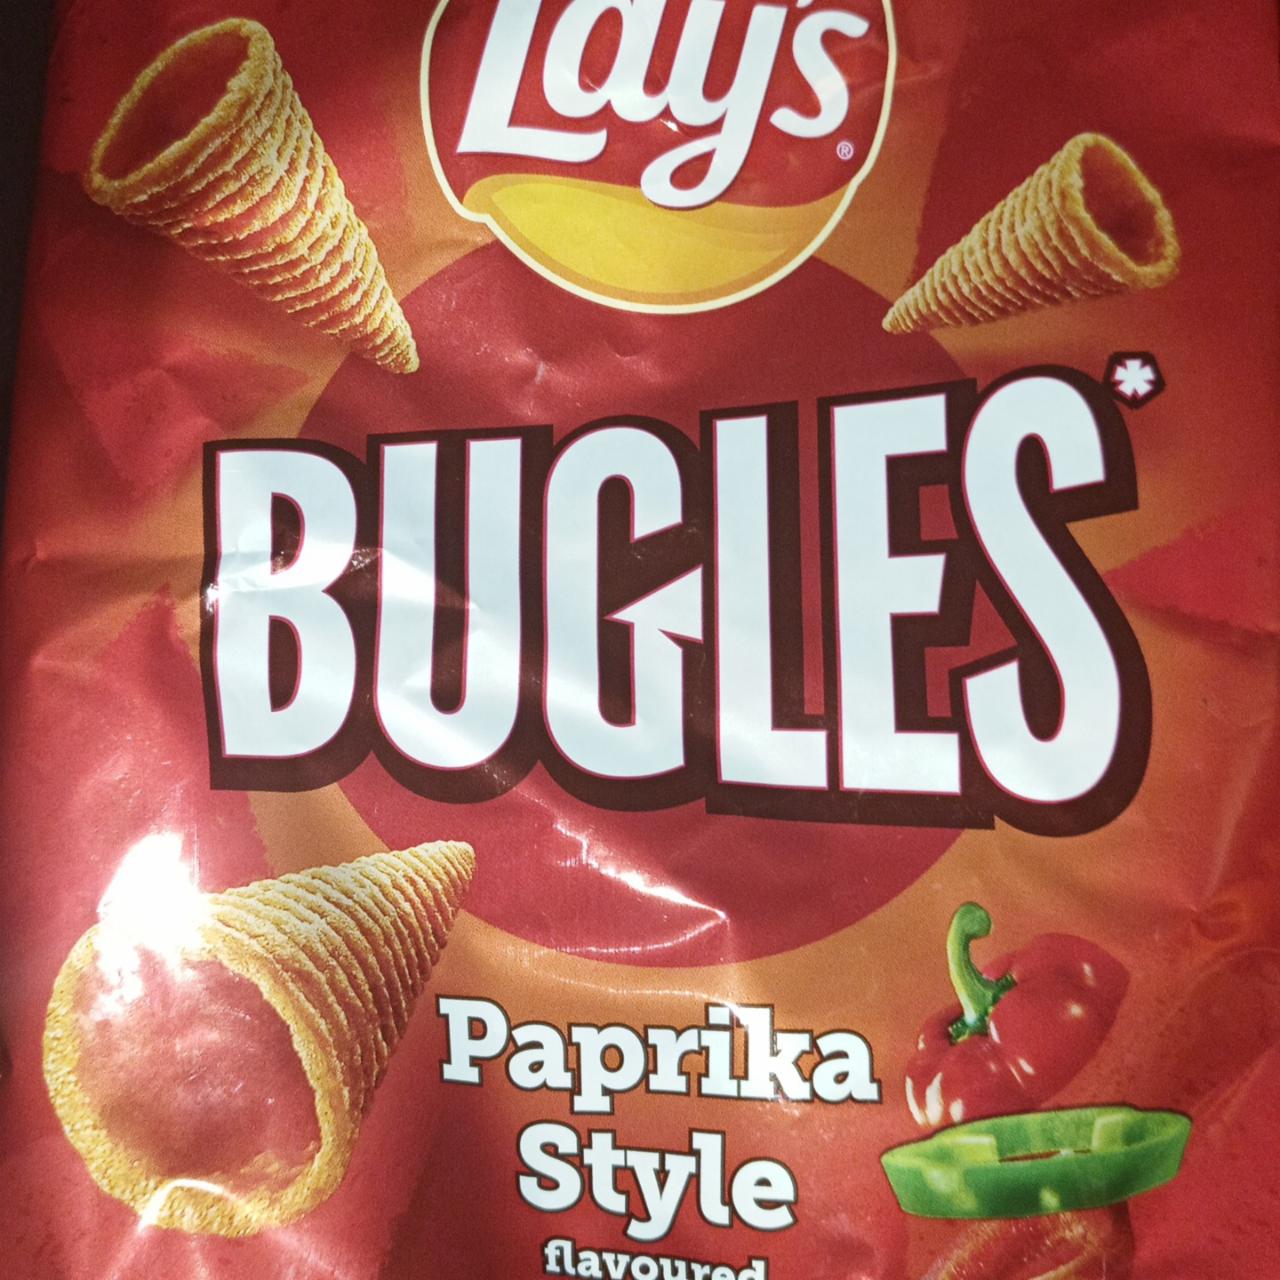 Zdjęcia - Bugles Paprika style flavoured Lay's